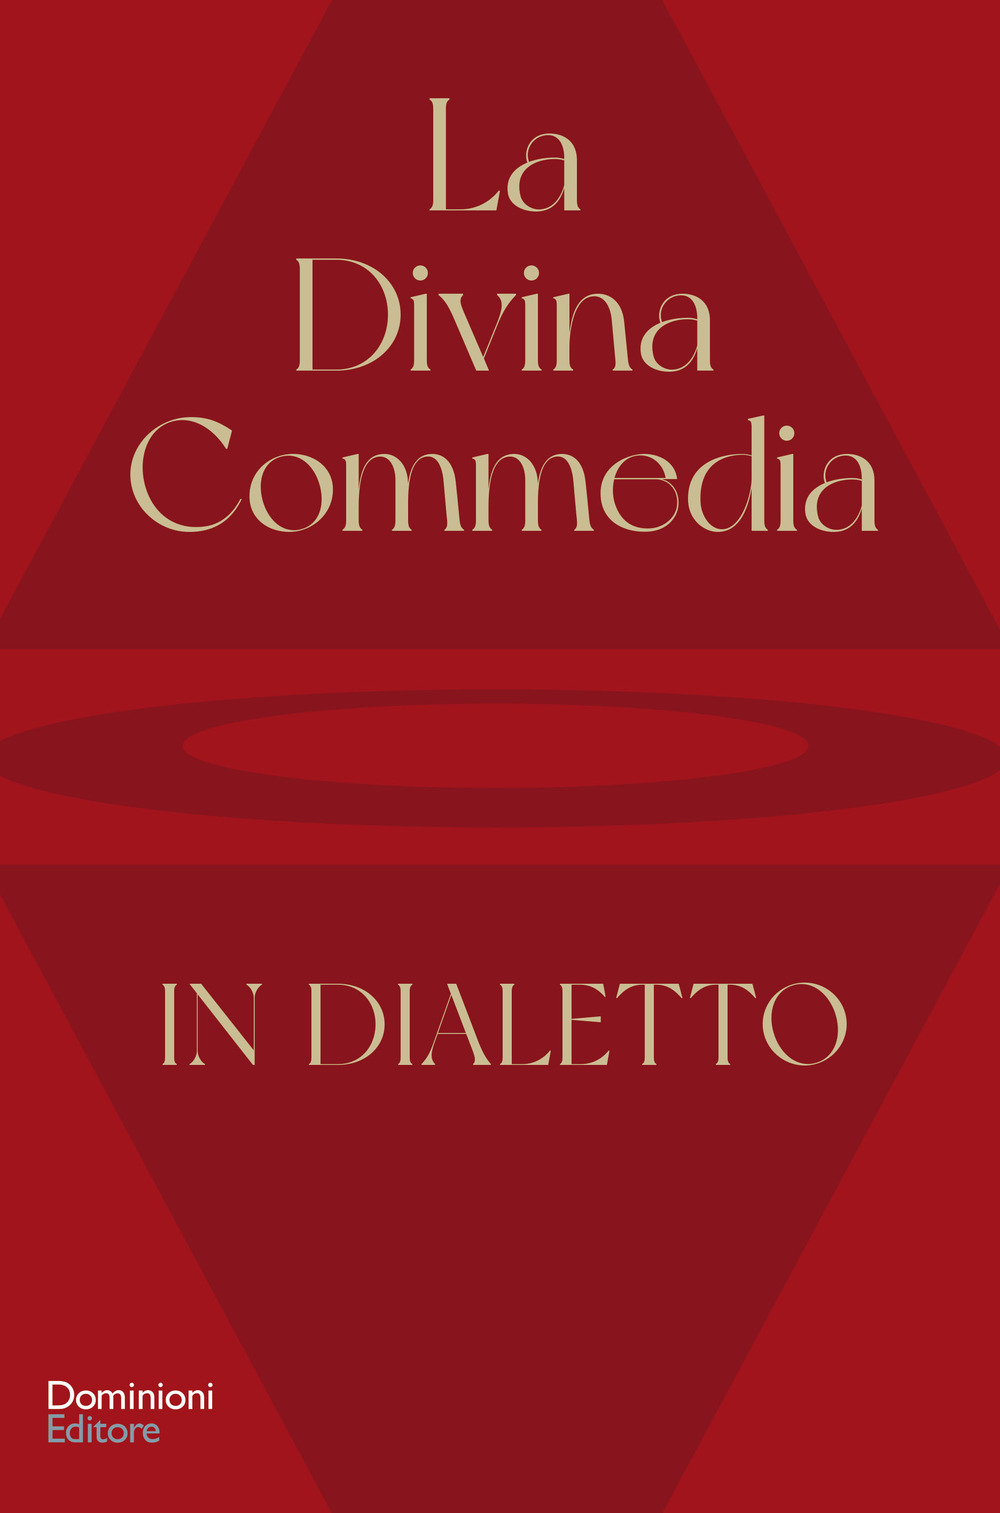 Libri Sala Paolo Elia - La Divina Commedia Tradotta In Dialetto NUOVO SIGILLATO, EDIZIONE DEL 31/10/2021 SUBITO DISPONIBILE